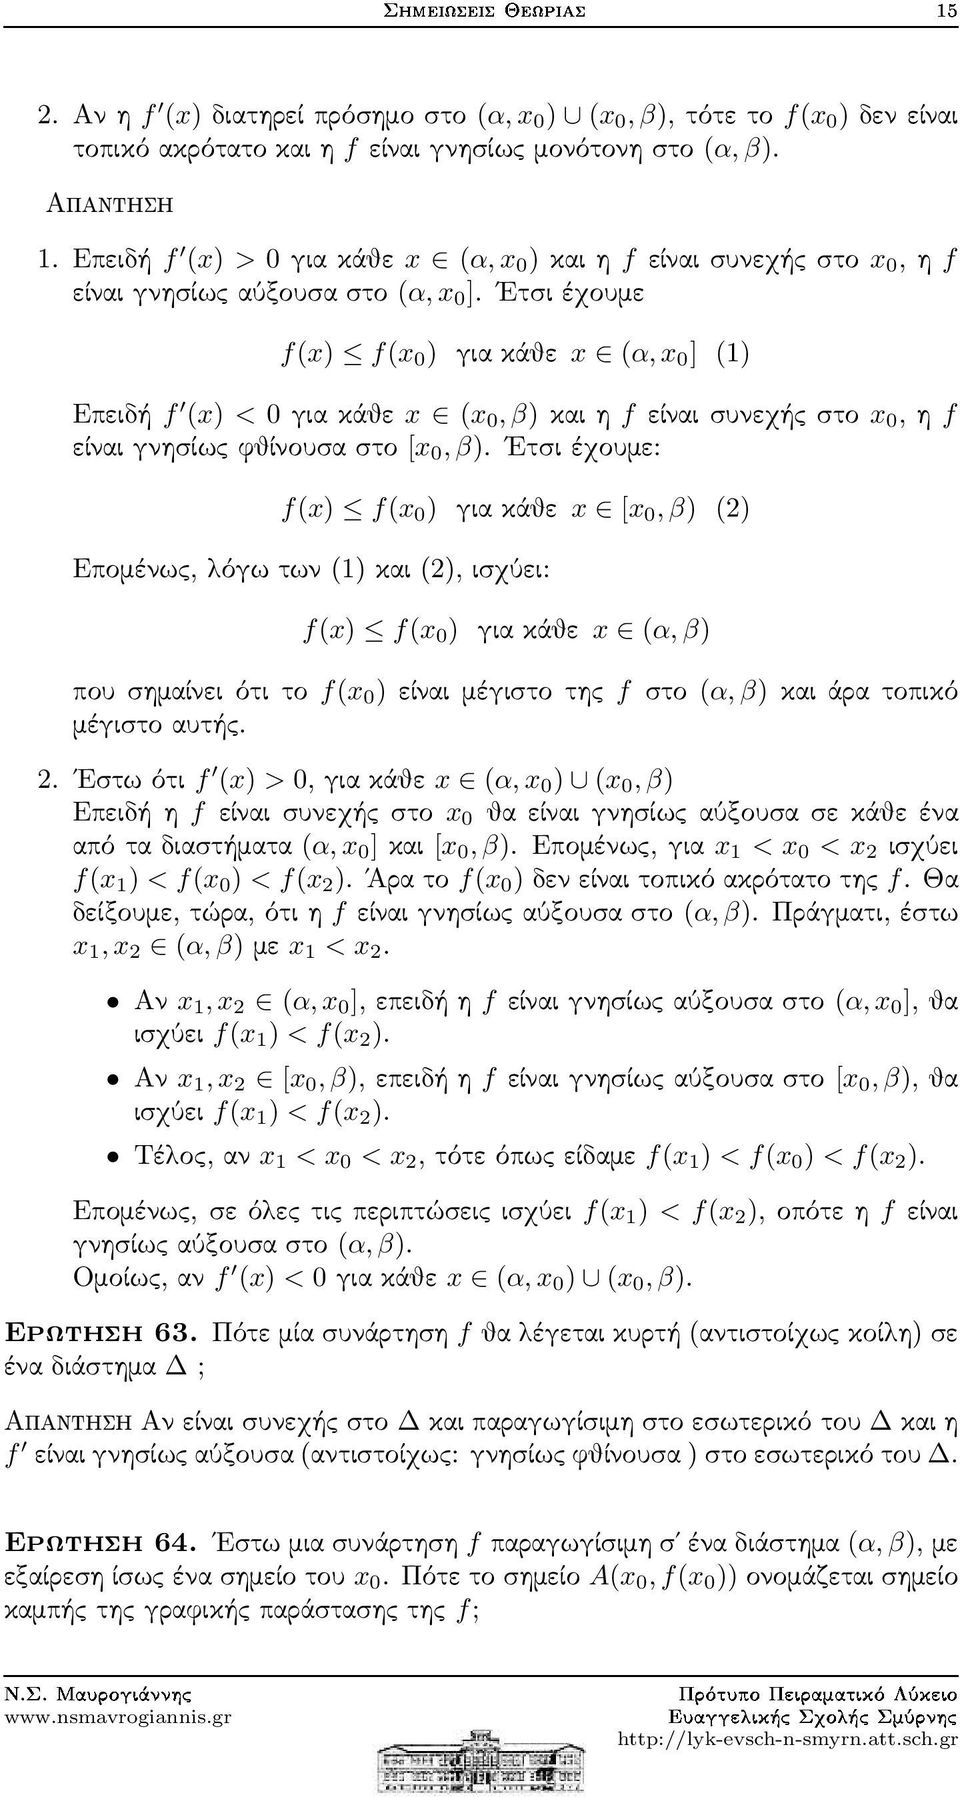 Ετσιέχουμε f(x) f(x 0 ) γιακάθε x (α,x 0 ] (1) Επειδή f (x) < 0γιακάθε x (x 0,β)καιηfείναισυνεχήςστο x 0,ηf είναιγνησίωςφθίνουσαστο [x 0,β).